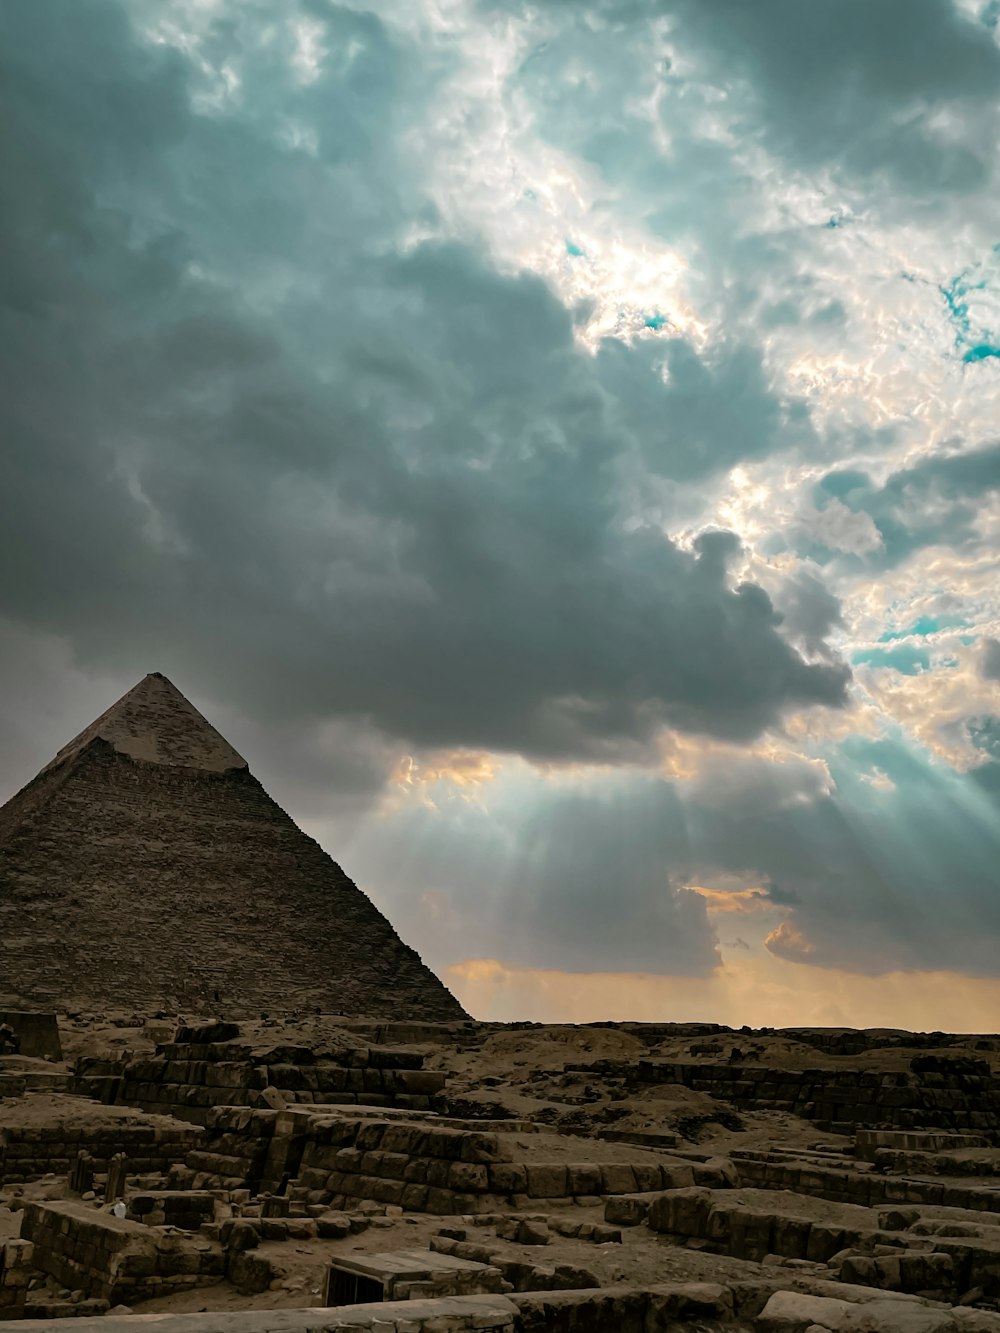 uma pirâmide muito alta sob um céu nublado